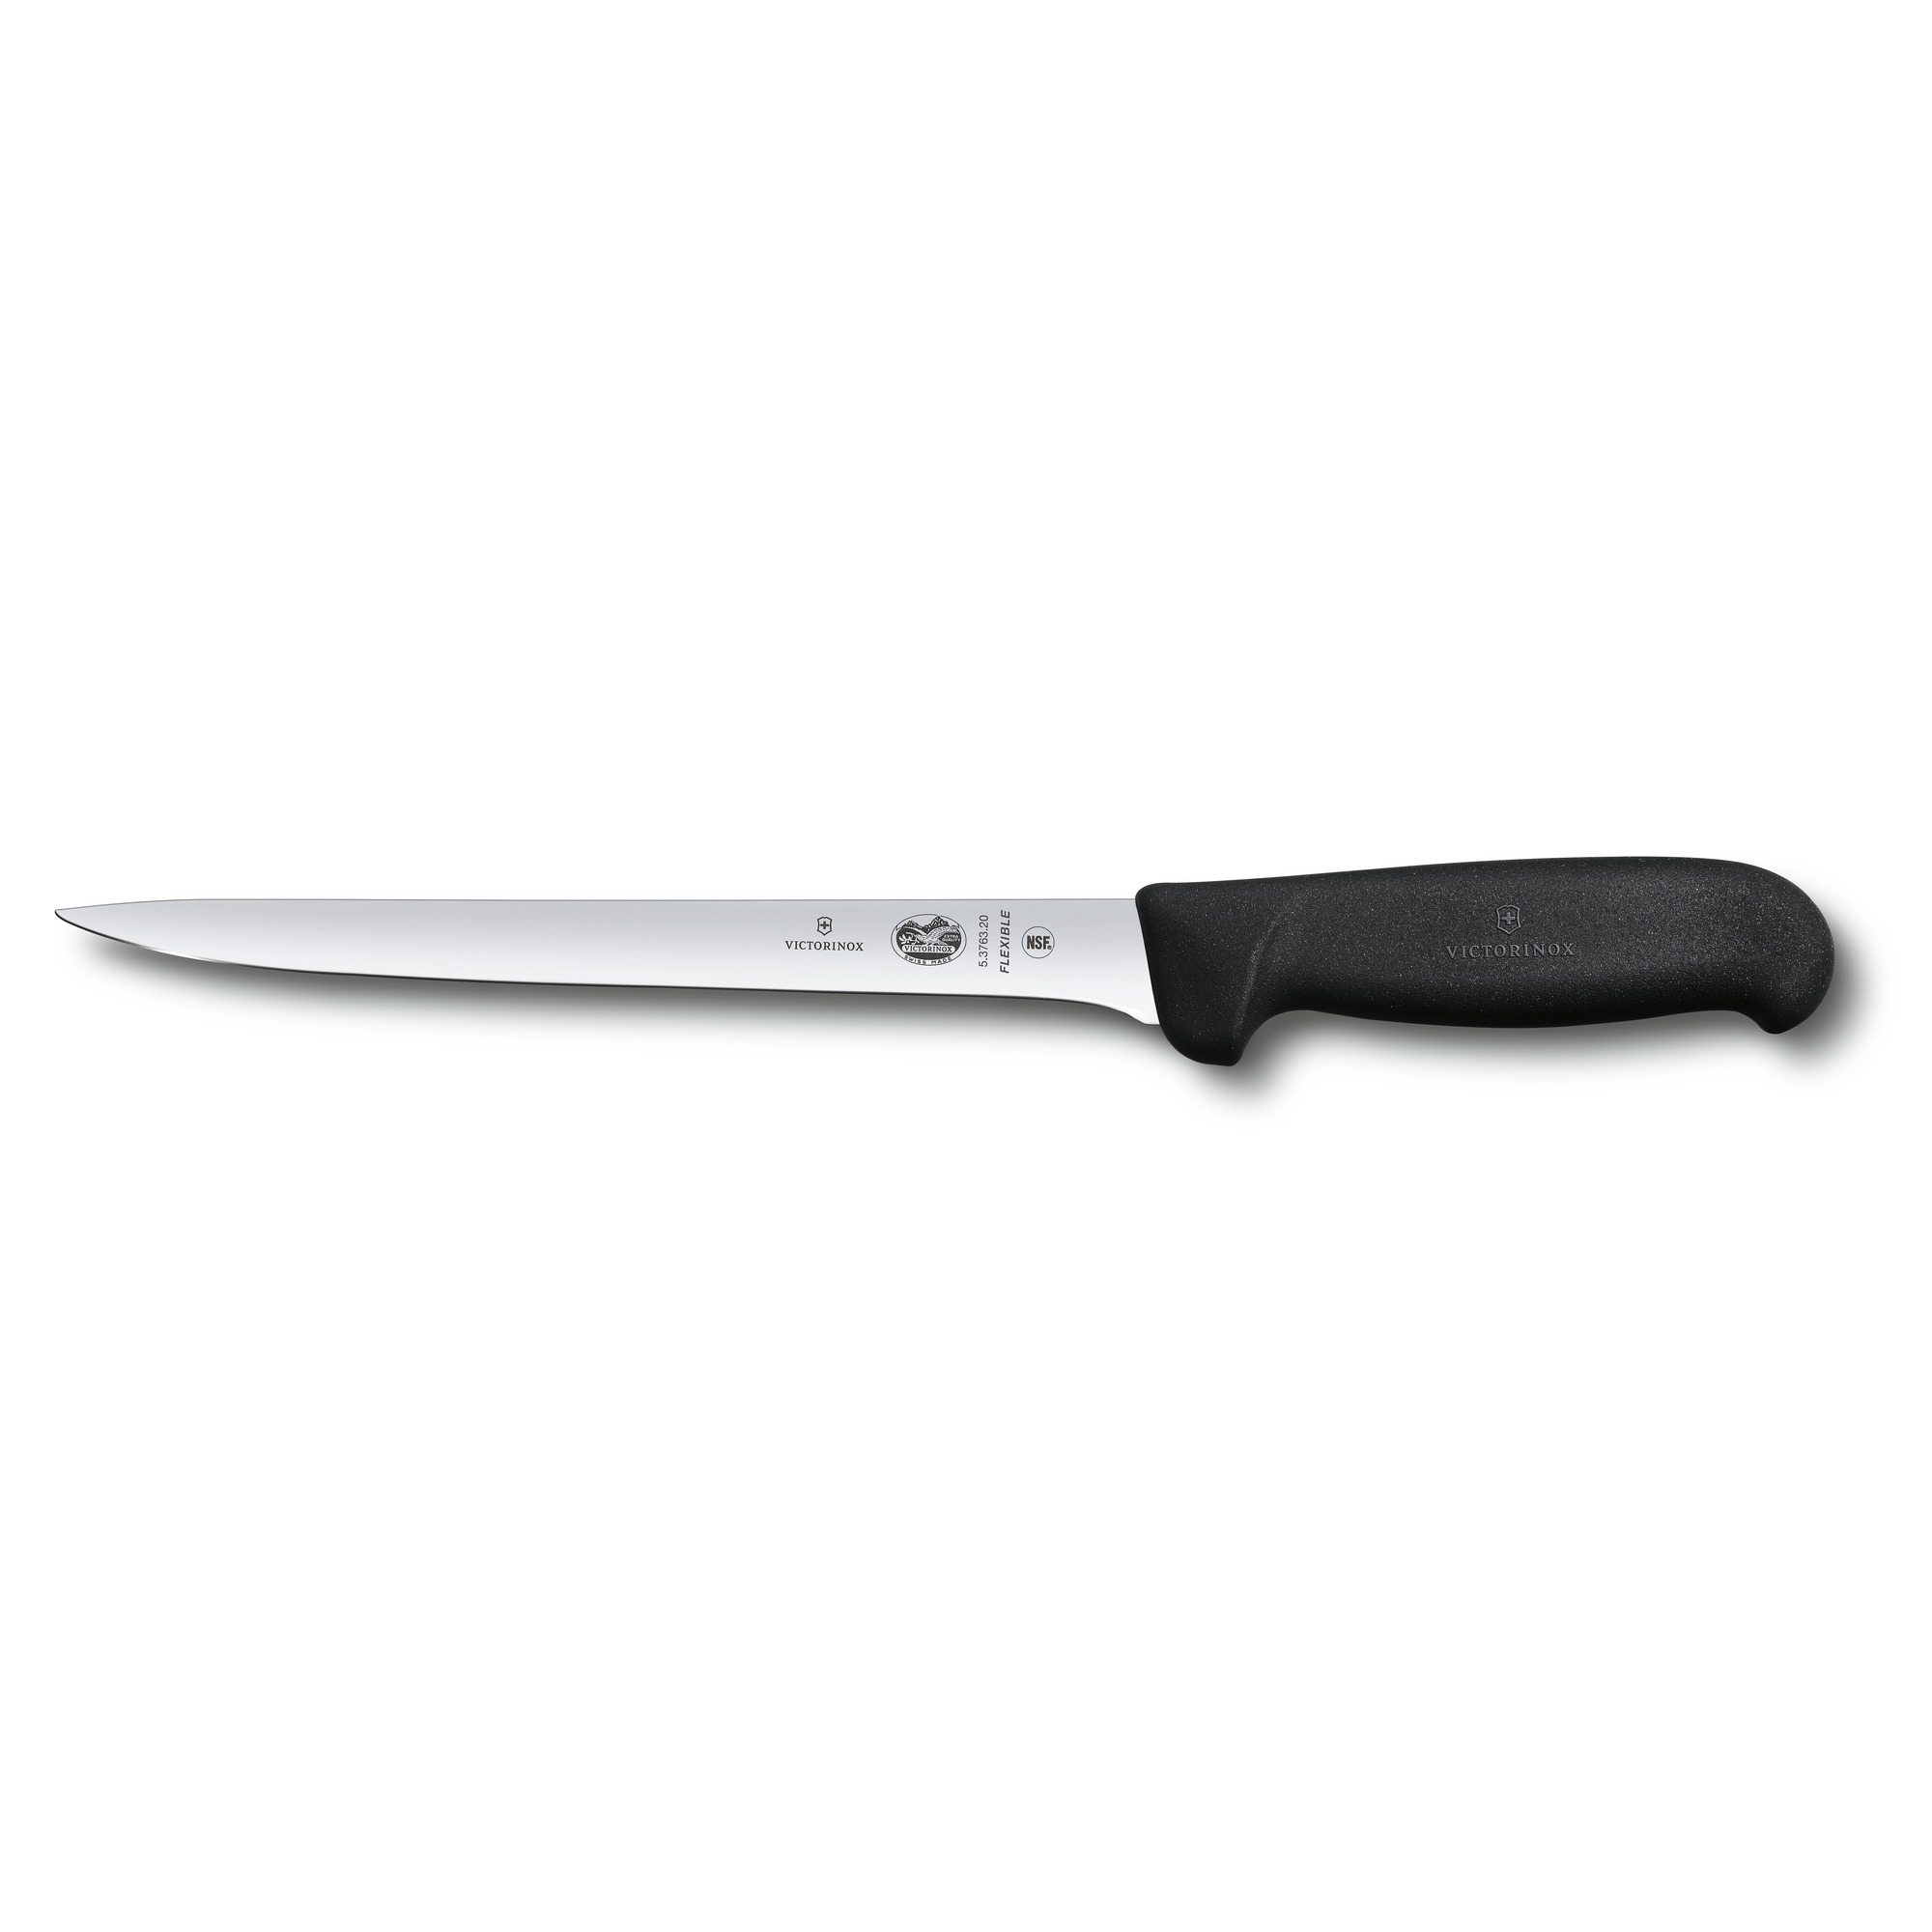 Нож филейный VICTORINOX Fibrox с гибким изогнутым лезвием 20 см, чёрный, черный, термопластический эластомер (tpe)